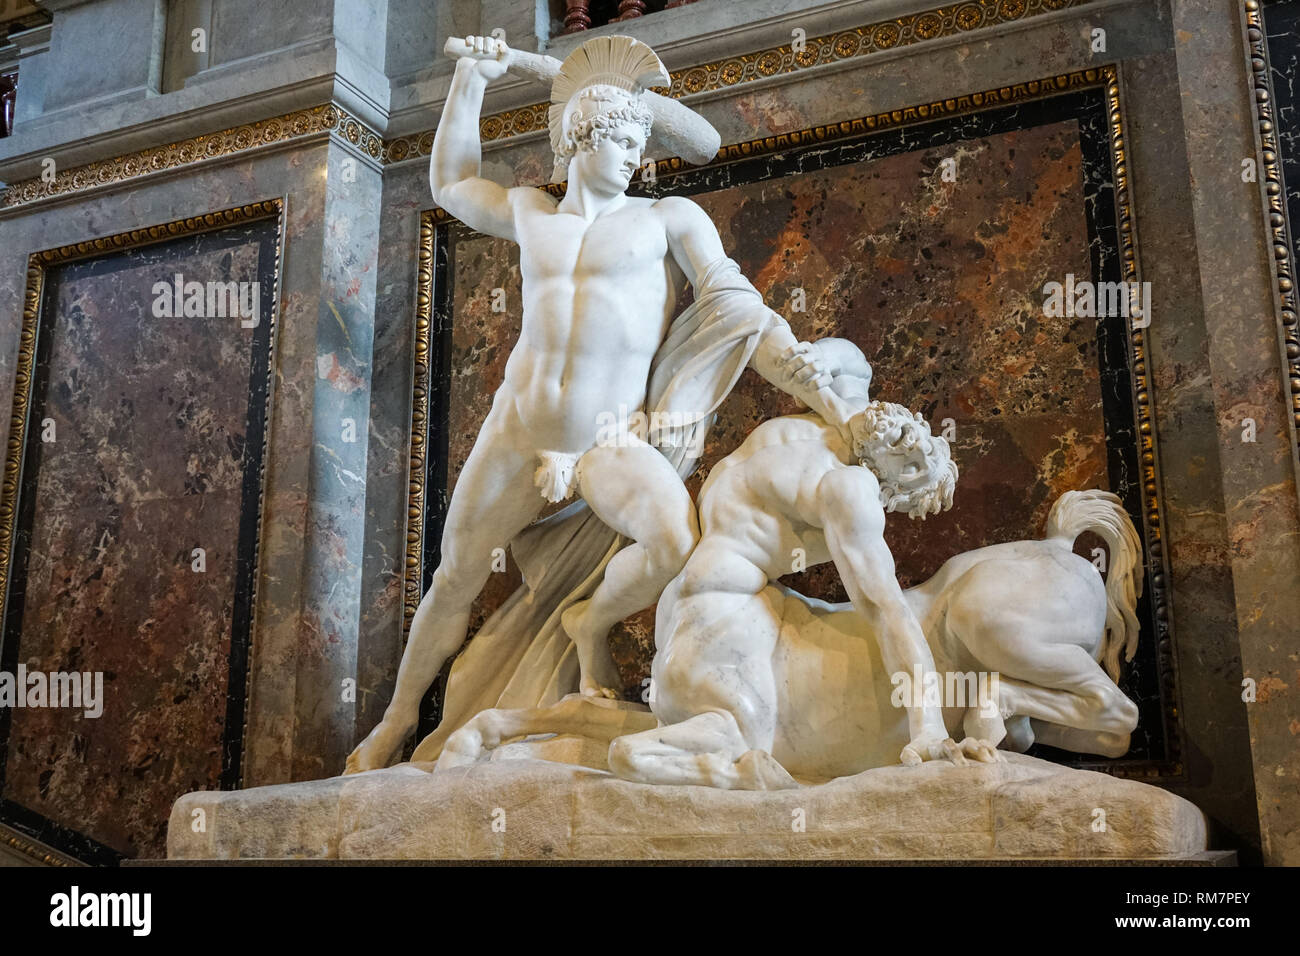 Thésée le centaure, défaites en sculpture d'Antonio Canova au Kunsthistorisches Museum de Vienne, Autriche Banque D'Images